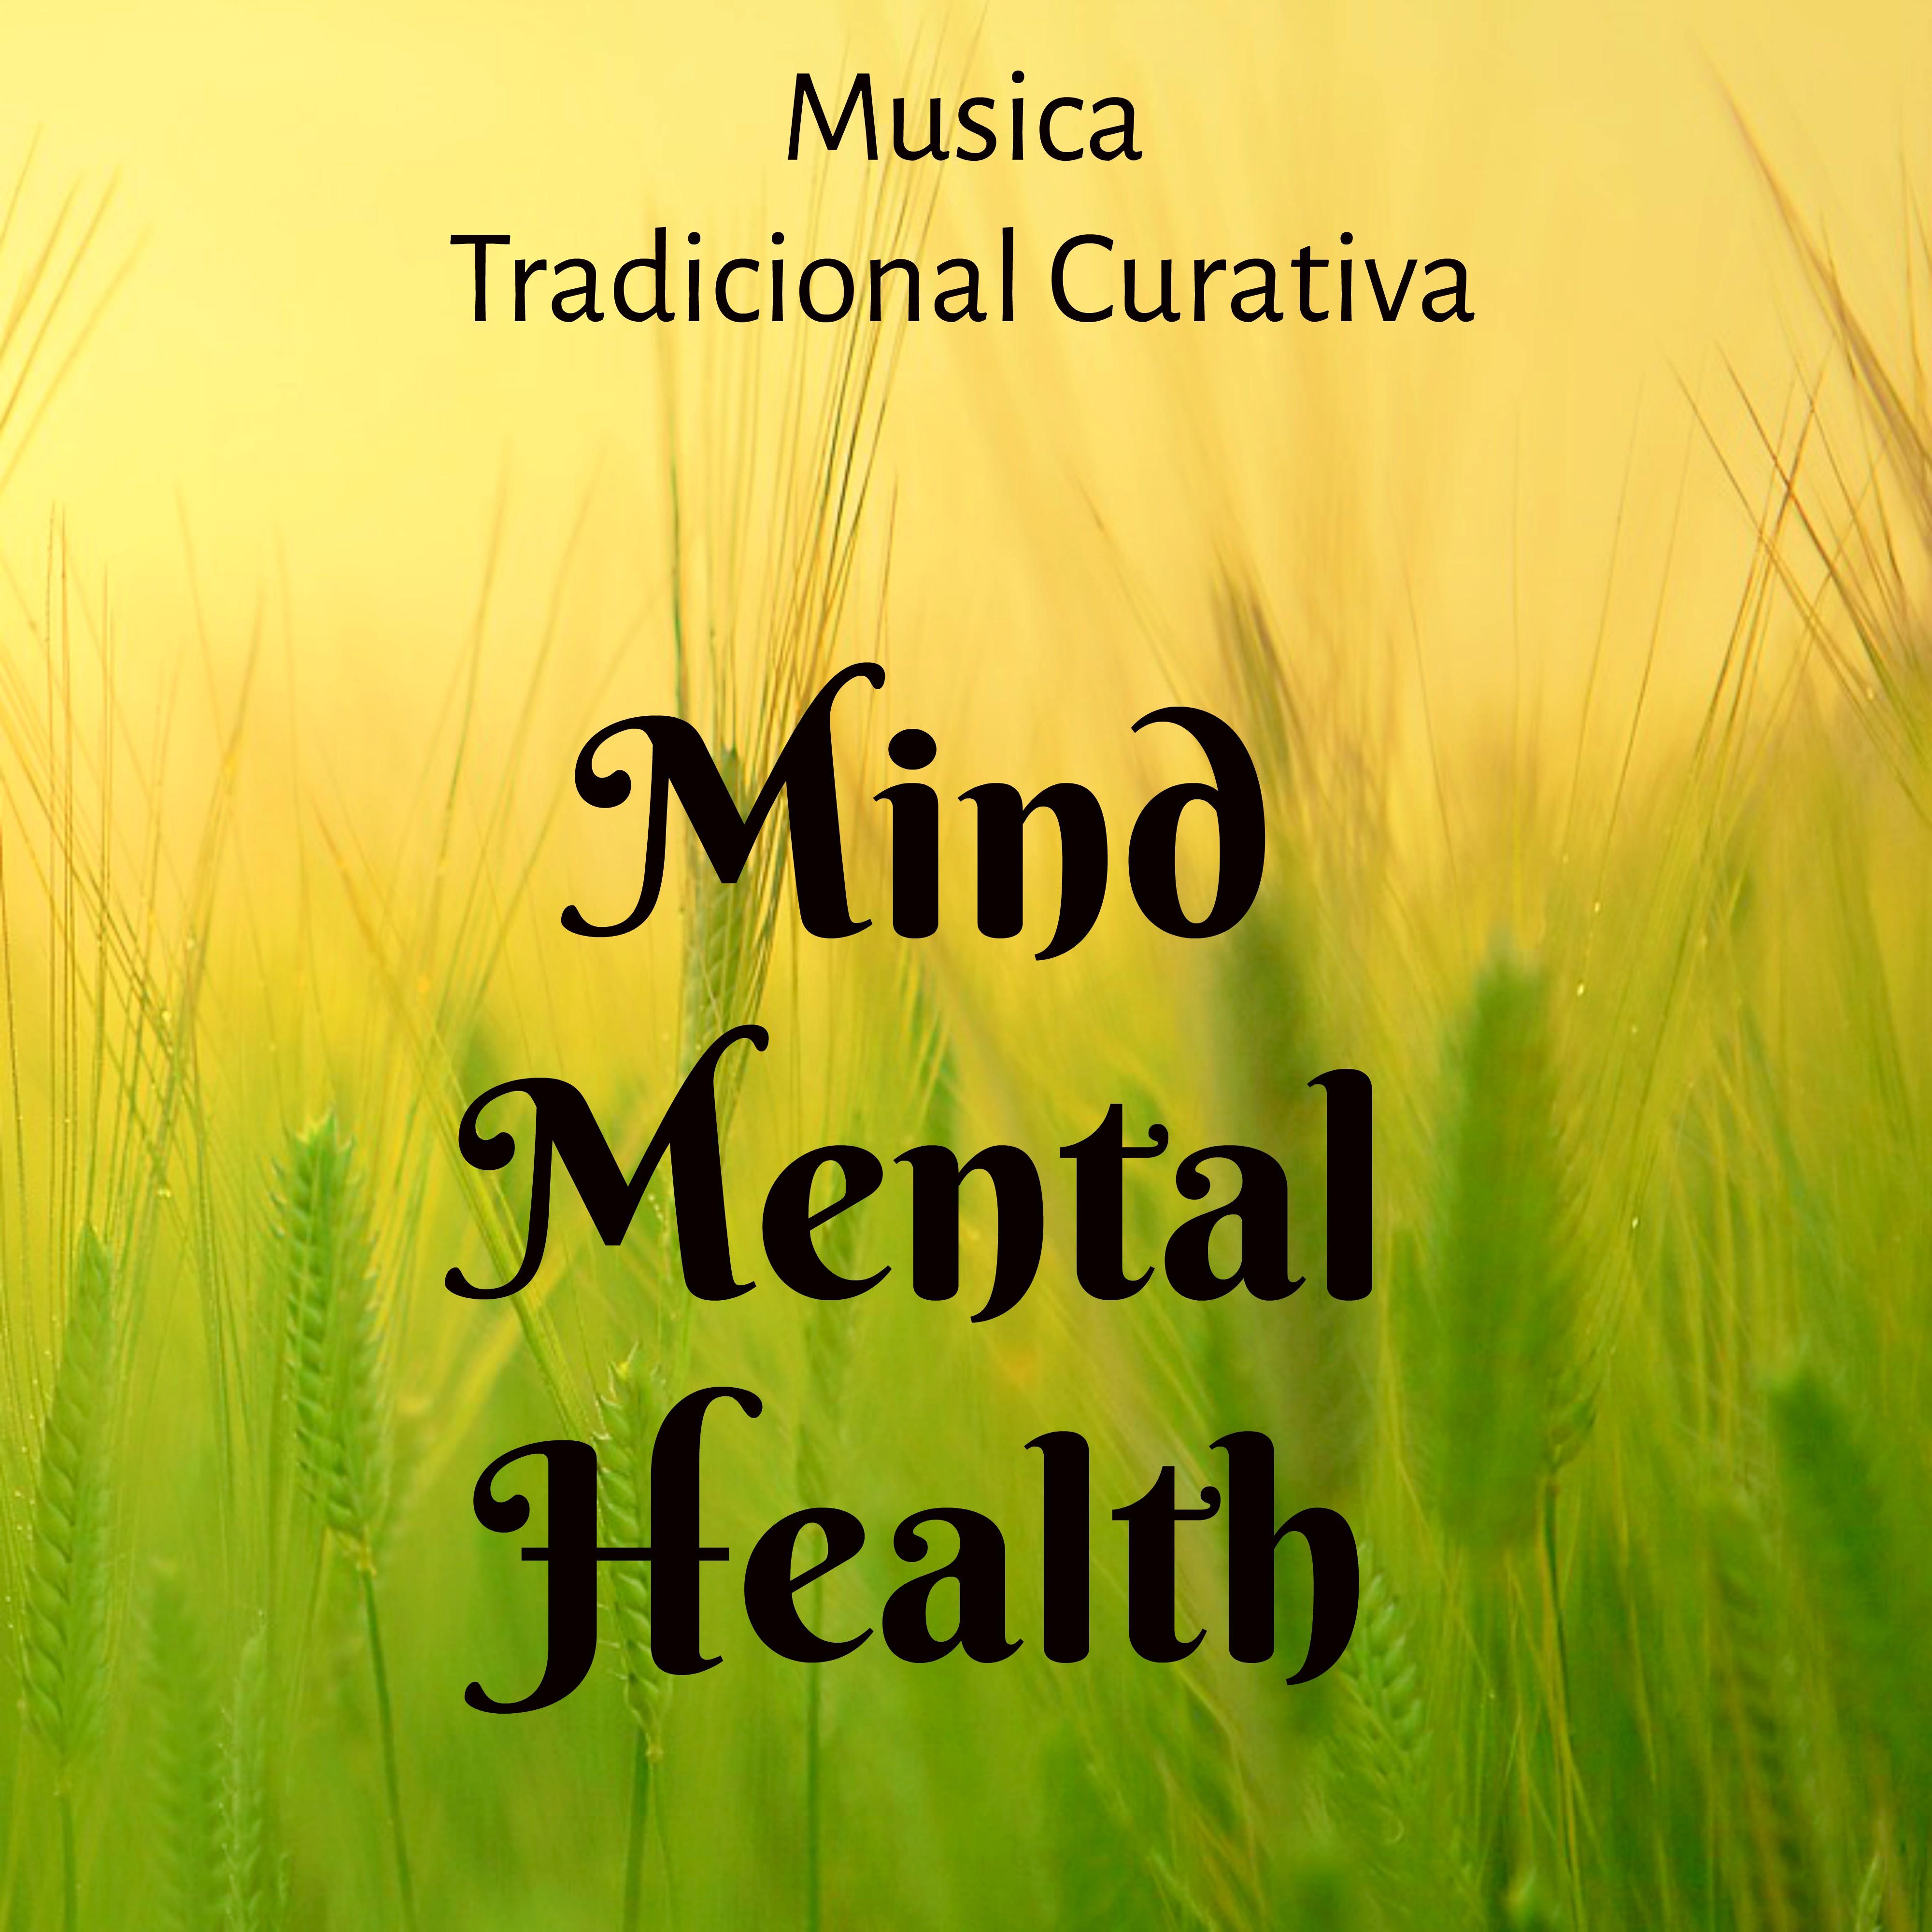 Mind Mental Health - Musica Tradicional Curativa para Siete Chakras Ejercicios de Meditación con Sonidos Relajantes New Age